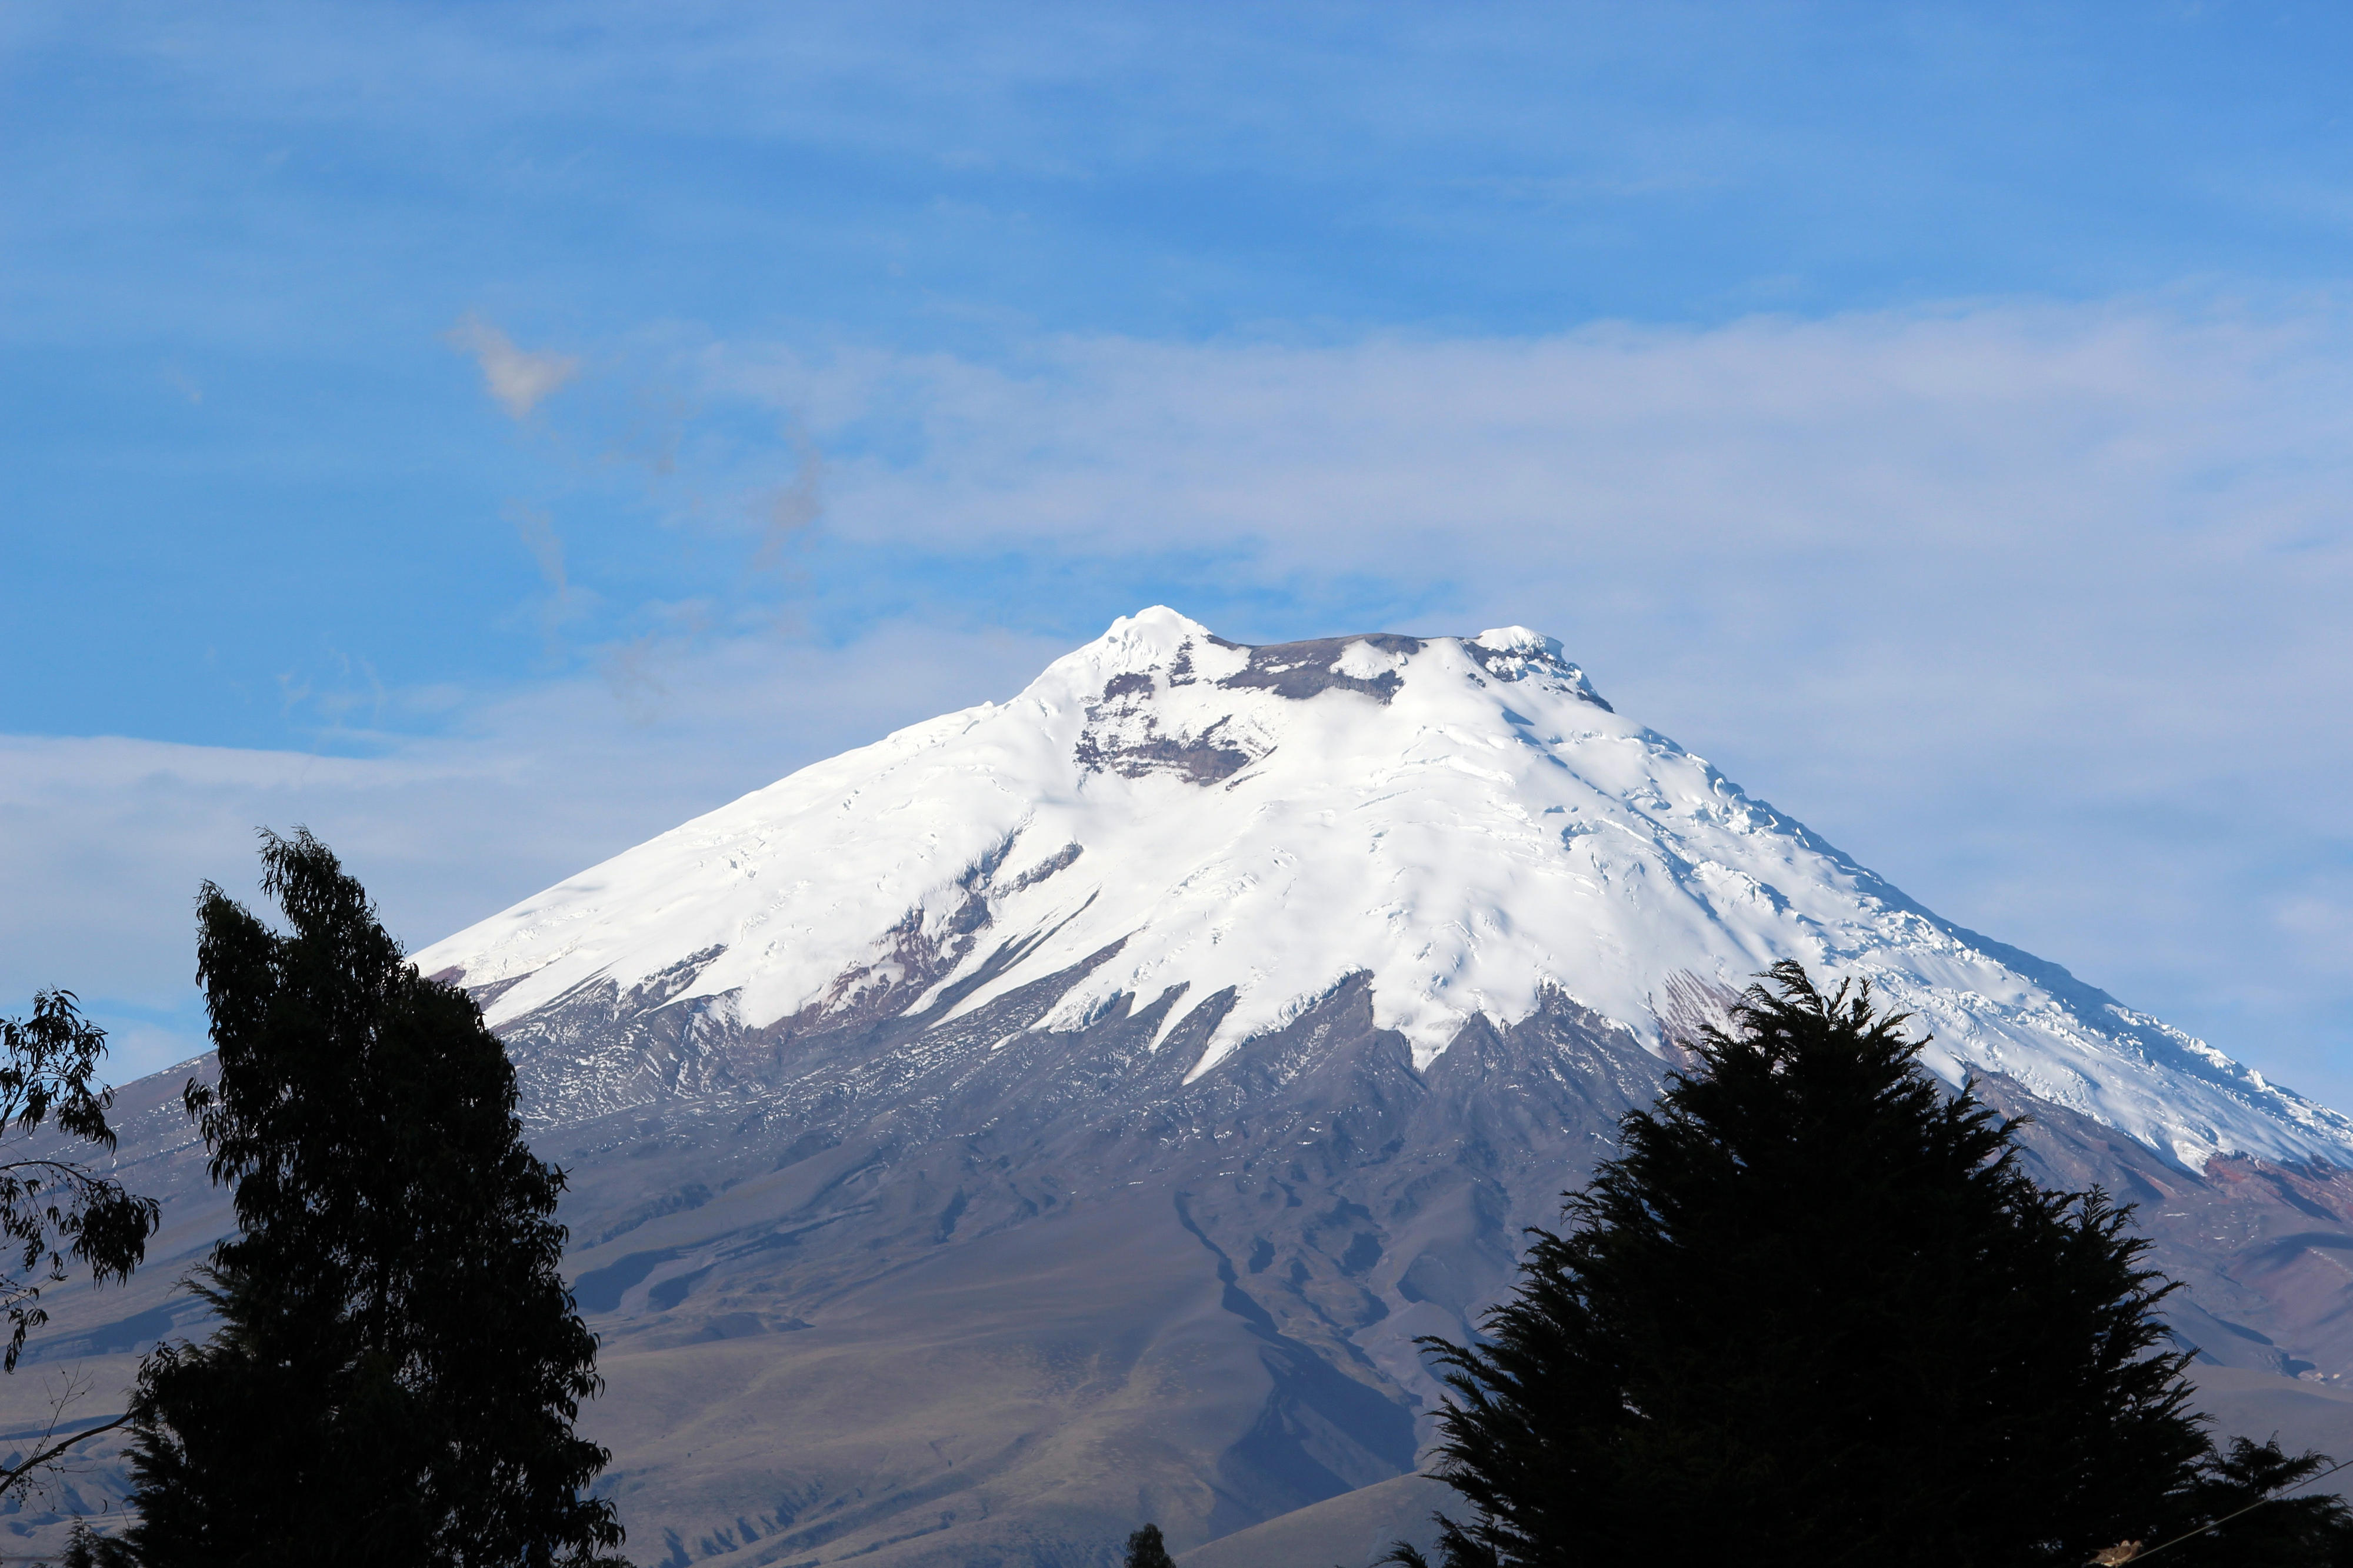 Cotopaxi volcano (5897 metres) in Ecuador